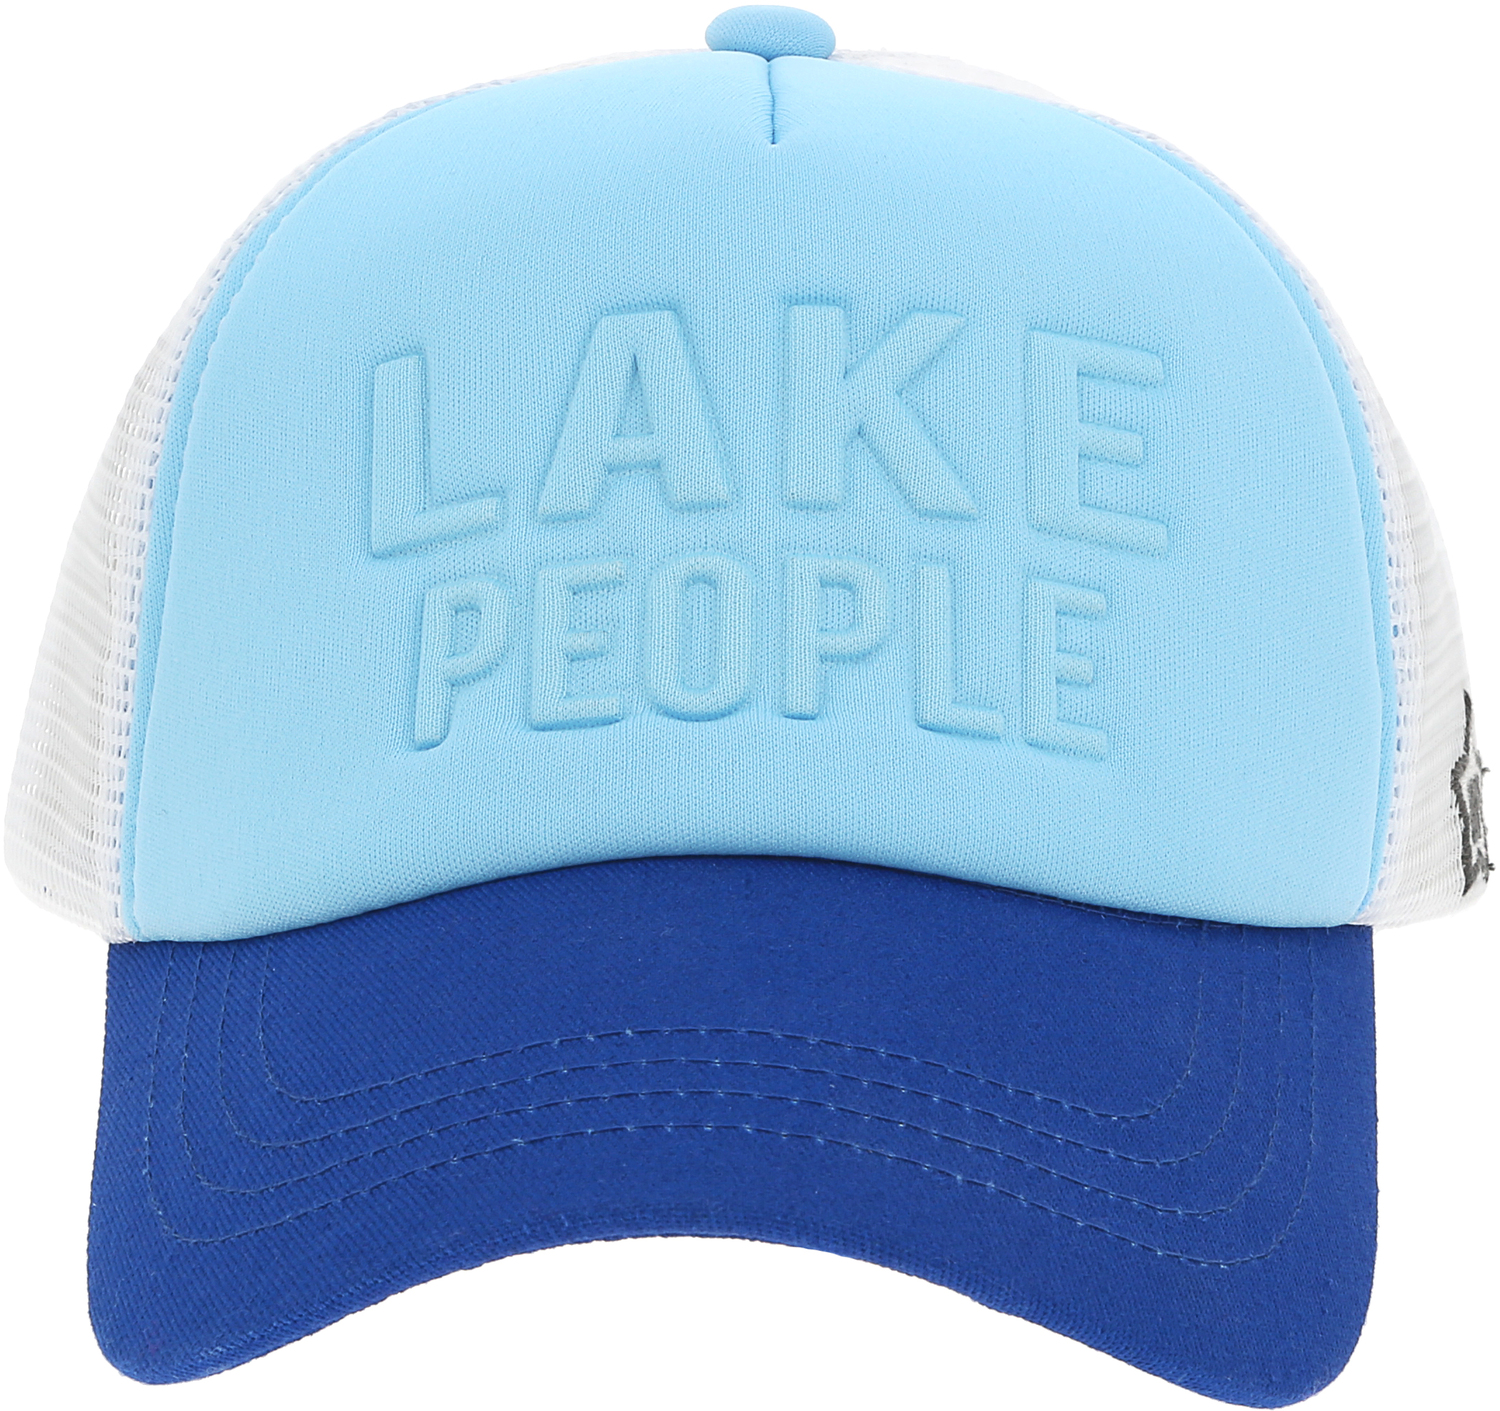 Lake People by We People - Lake People - Adjustable Lake Blue Neoprene Mesh Hat